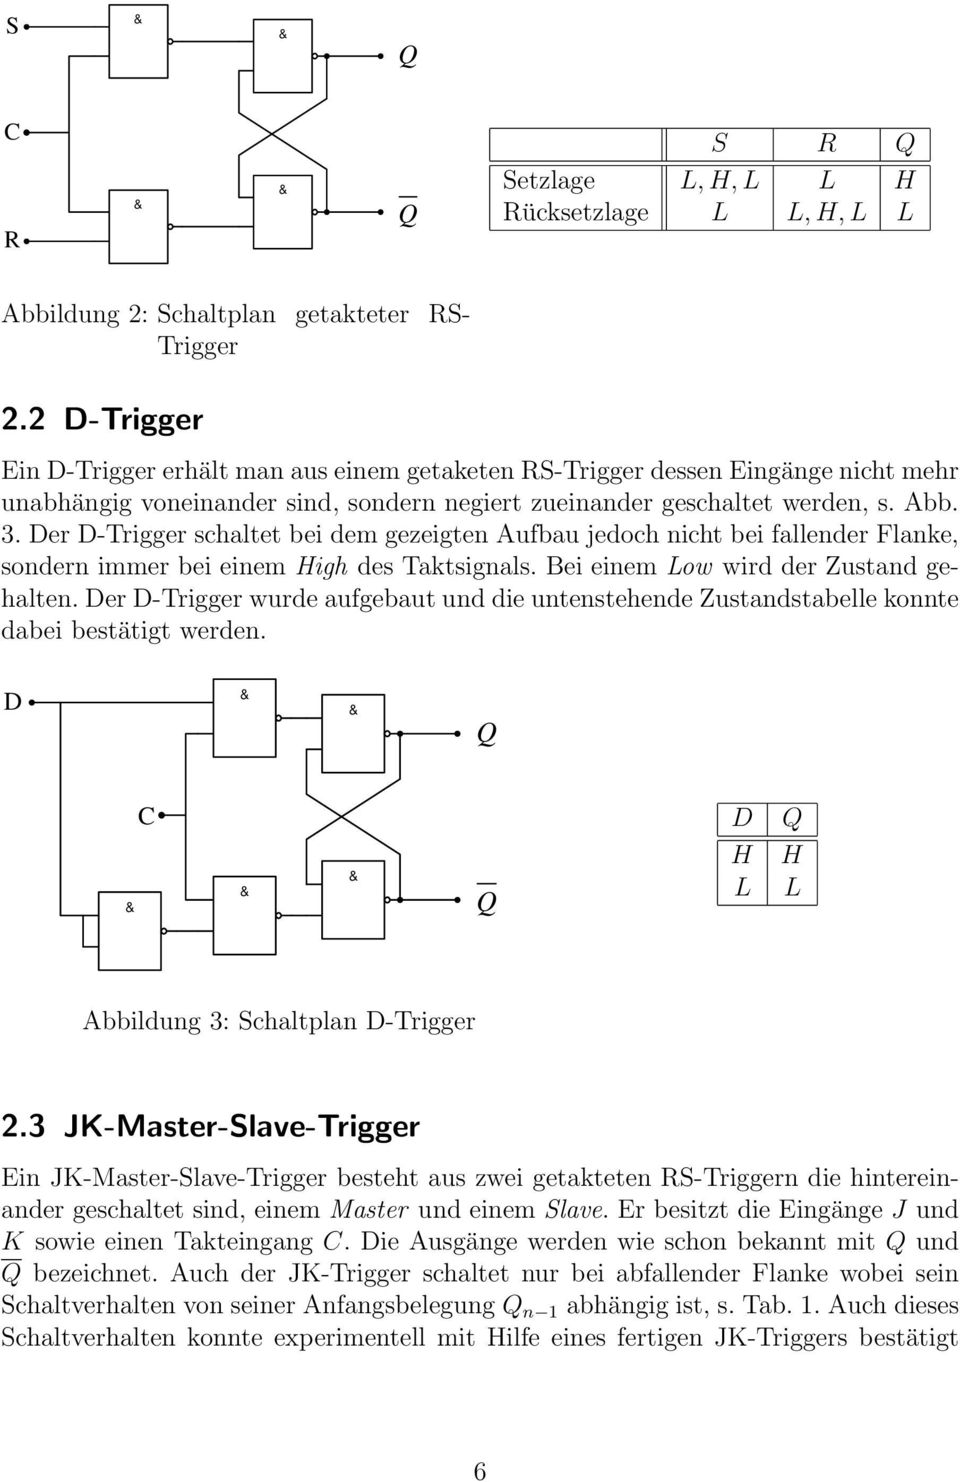 Der D-Trigger schaltet bei dem gezeigten Aufbau jedoch nicht bei fallender Flanke, sondern immer bei einem High des Taktsignals. Bei einem Low wird der Zustand gehalten.